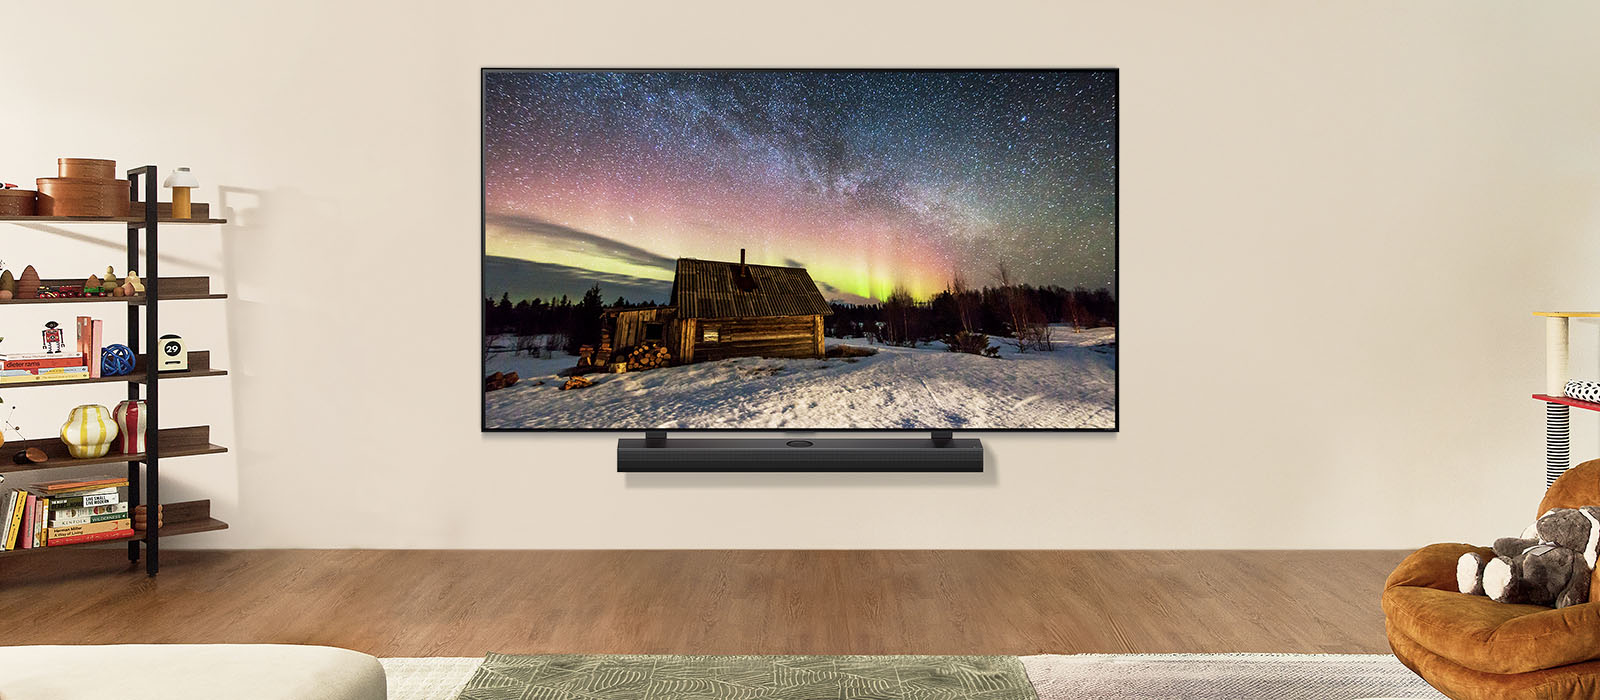 LG TV i LG soundbar u savremenom životnom prostoru tokom dana. Na ekranu je prikazana slika polarne svetlosti na idealnom nivou osvetljenosti.